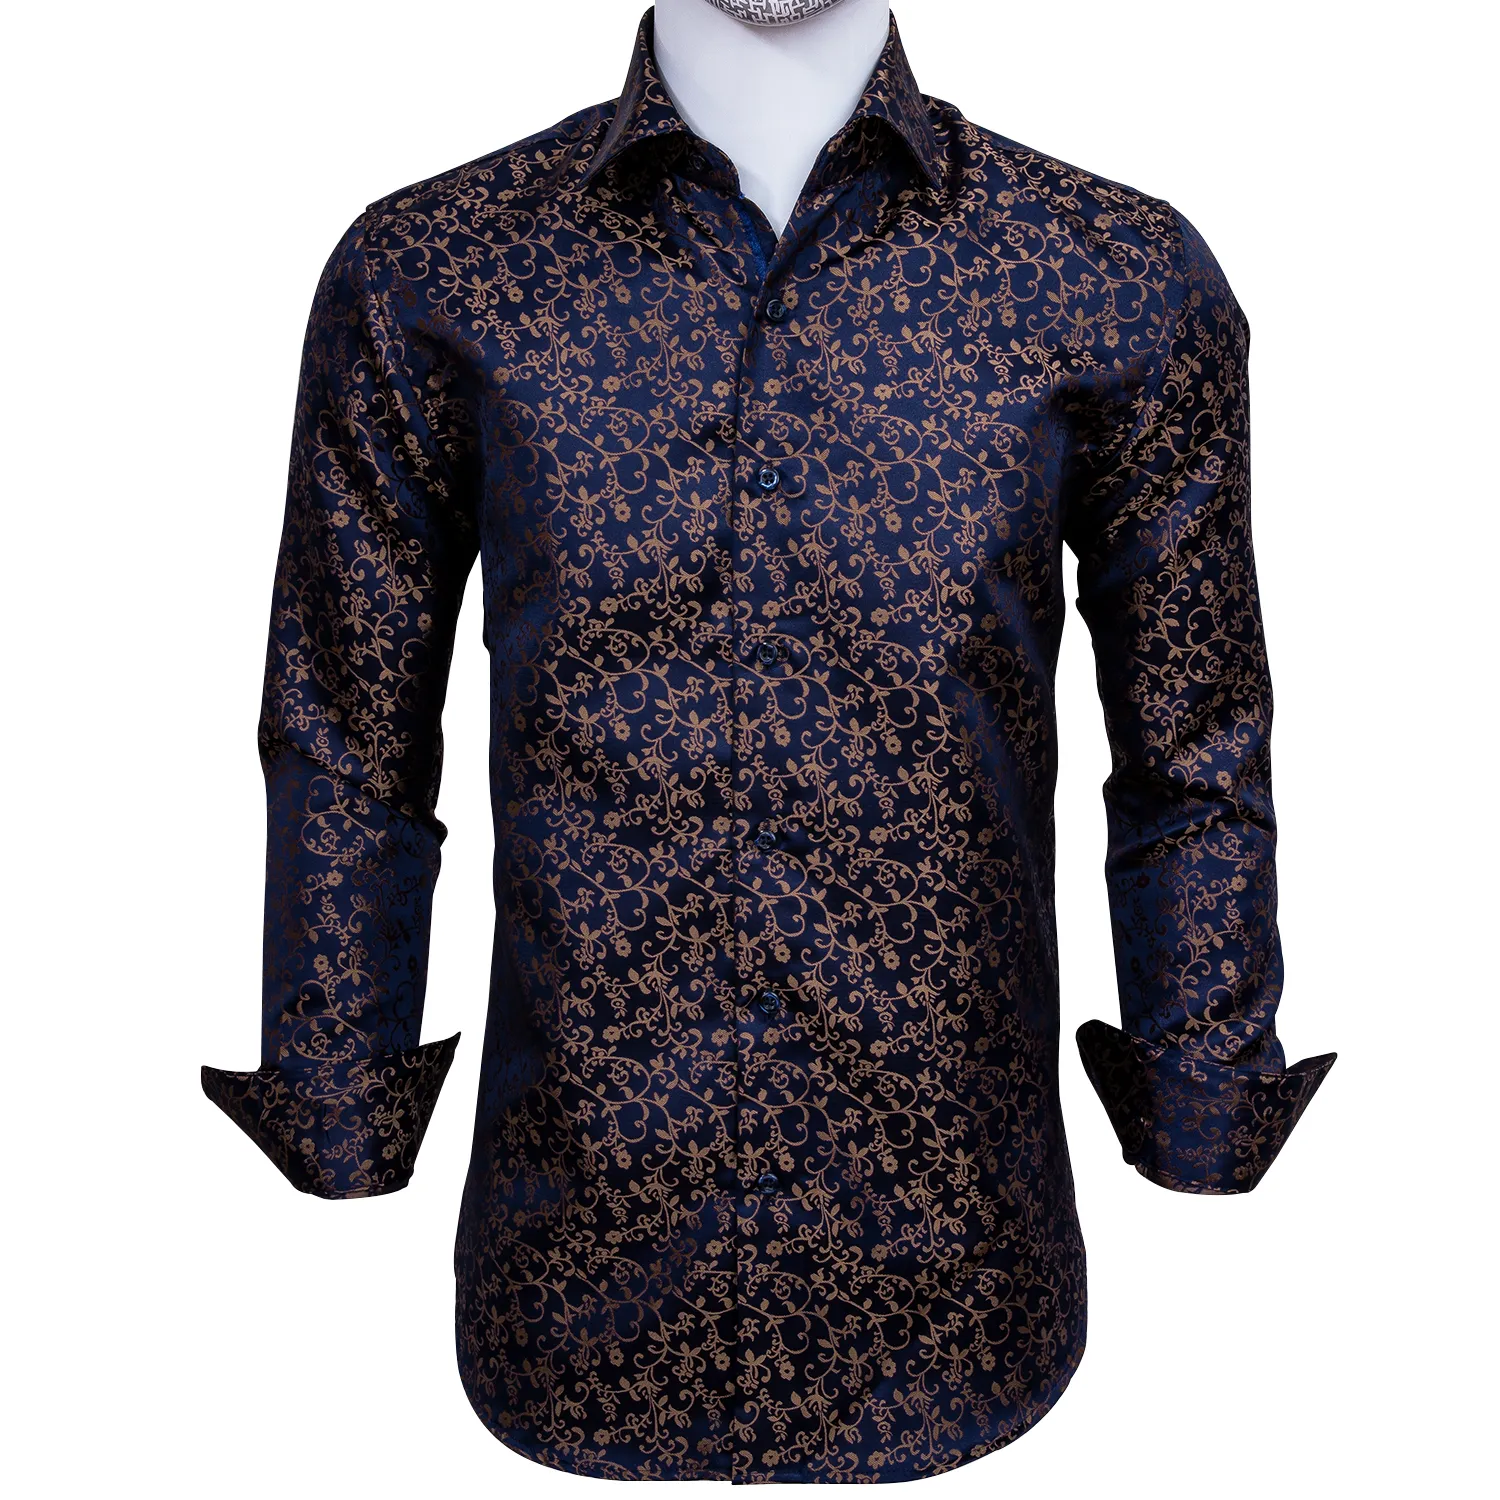 Schneller Versand Silk Männer T-Shirts Jacquard Woven Blau Gold Blumen dünne Hemden für Kleid-Partei-Hochzeit Exquisite Mode CY-0006